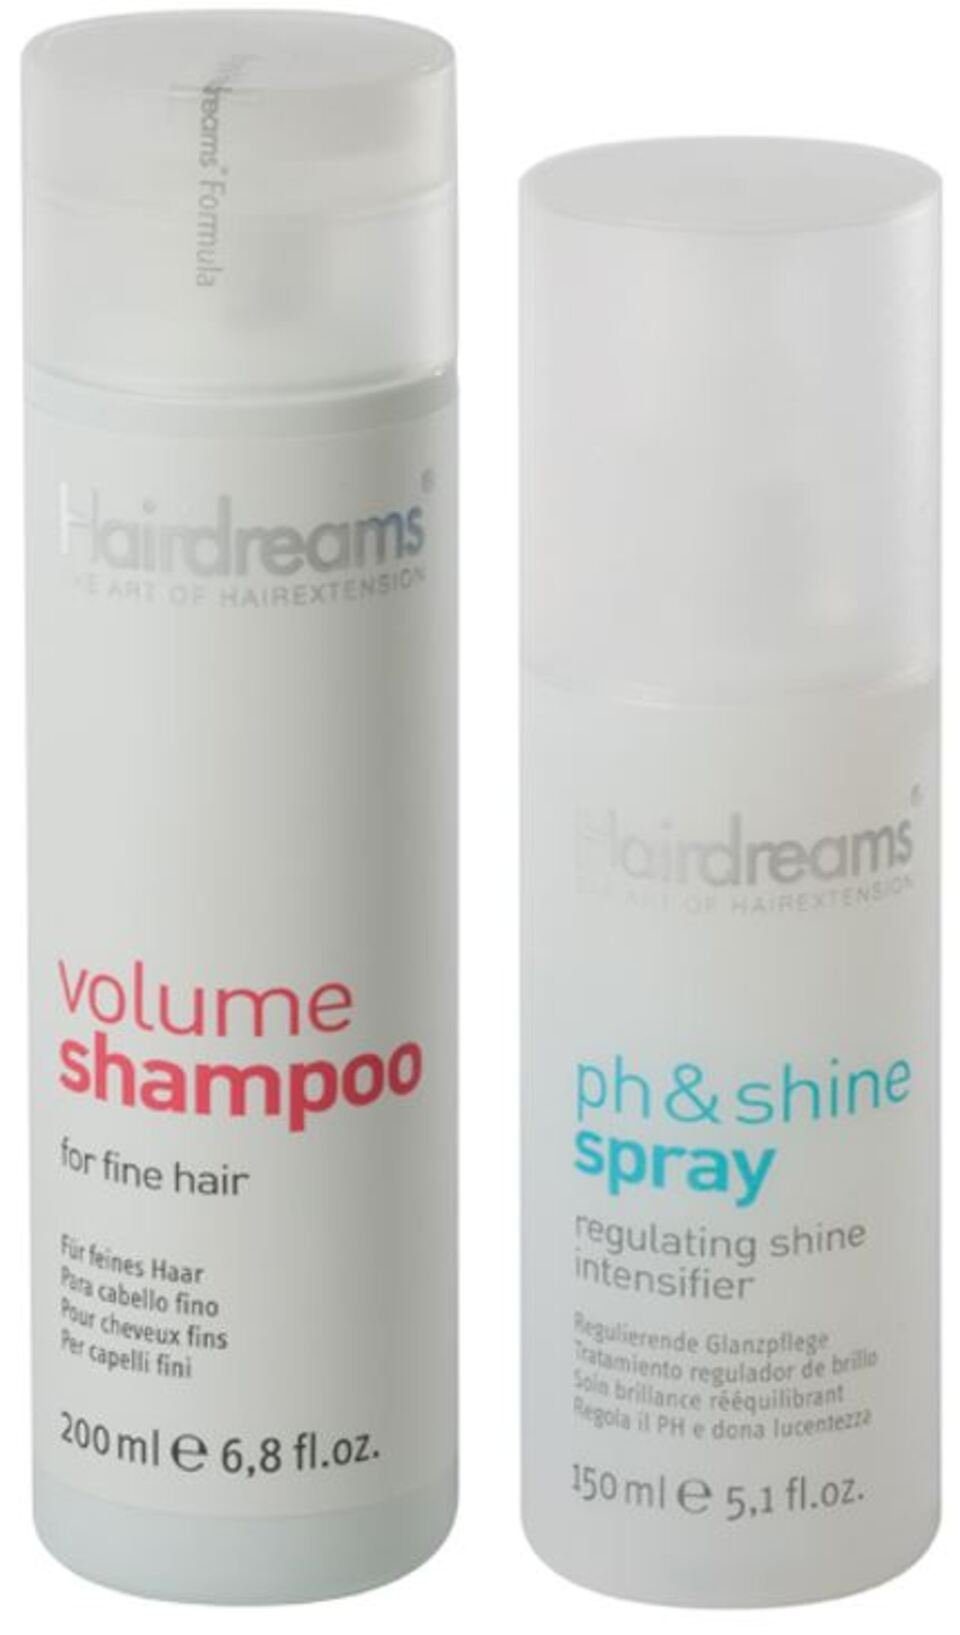 Hairdreams Haarpflege-Set Volumen Shampoo & ph&shine Spray, Set, 2-tlg., für Haare mit Echthaarverlängerung